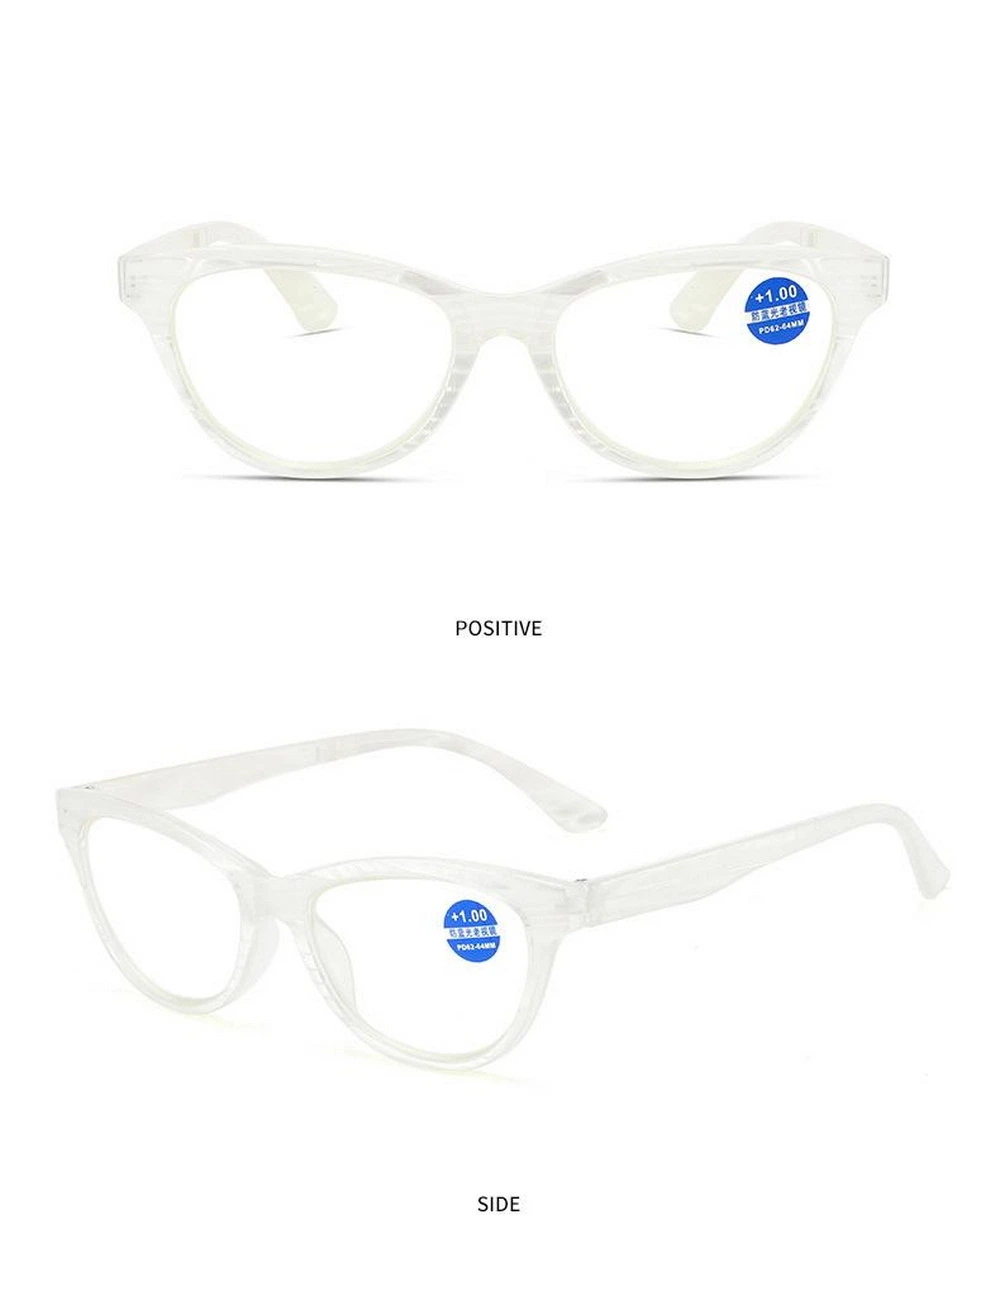 New Arrival High Quality Full Rim PC Cat Eye Frame Reading Glasses